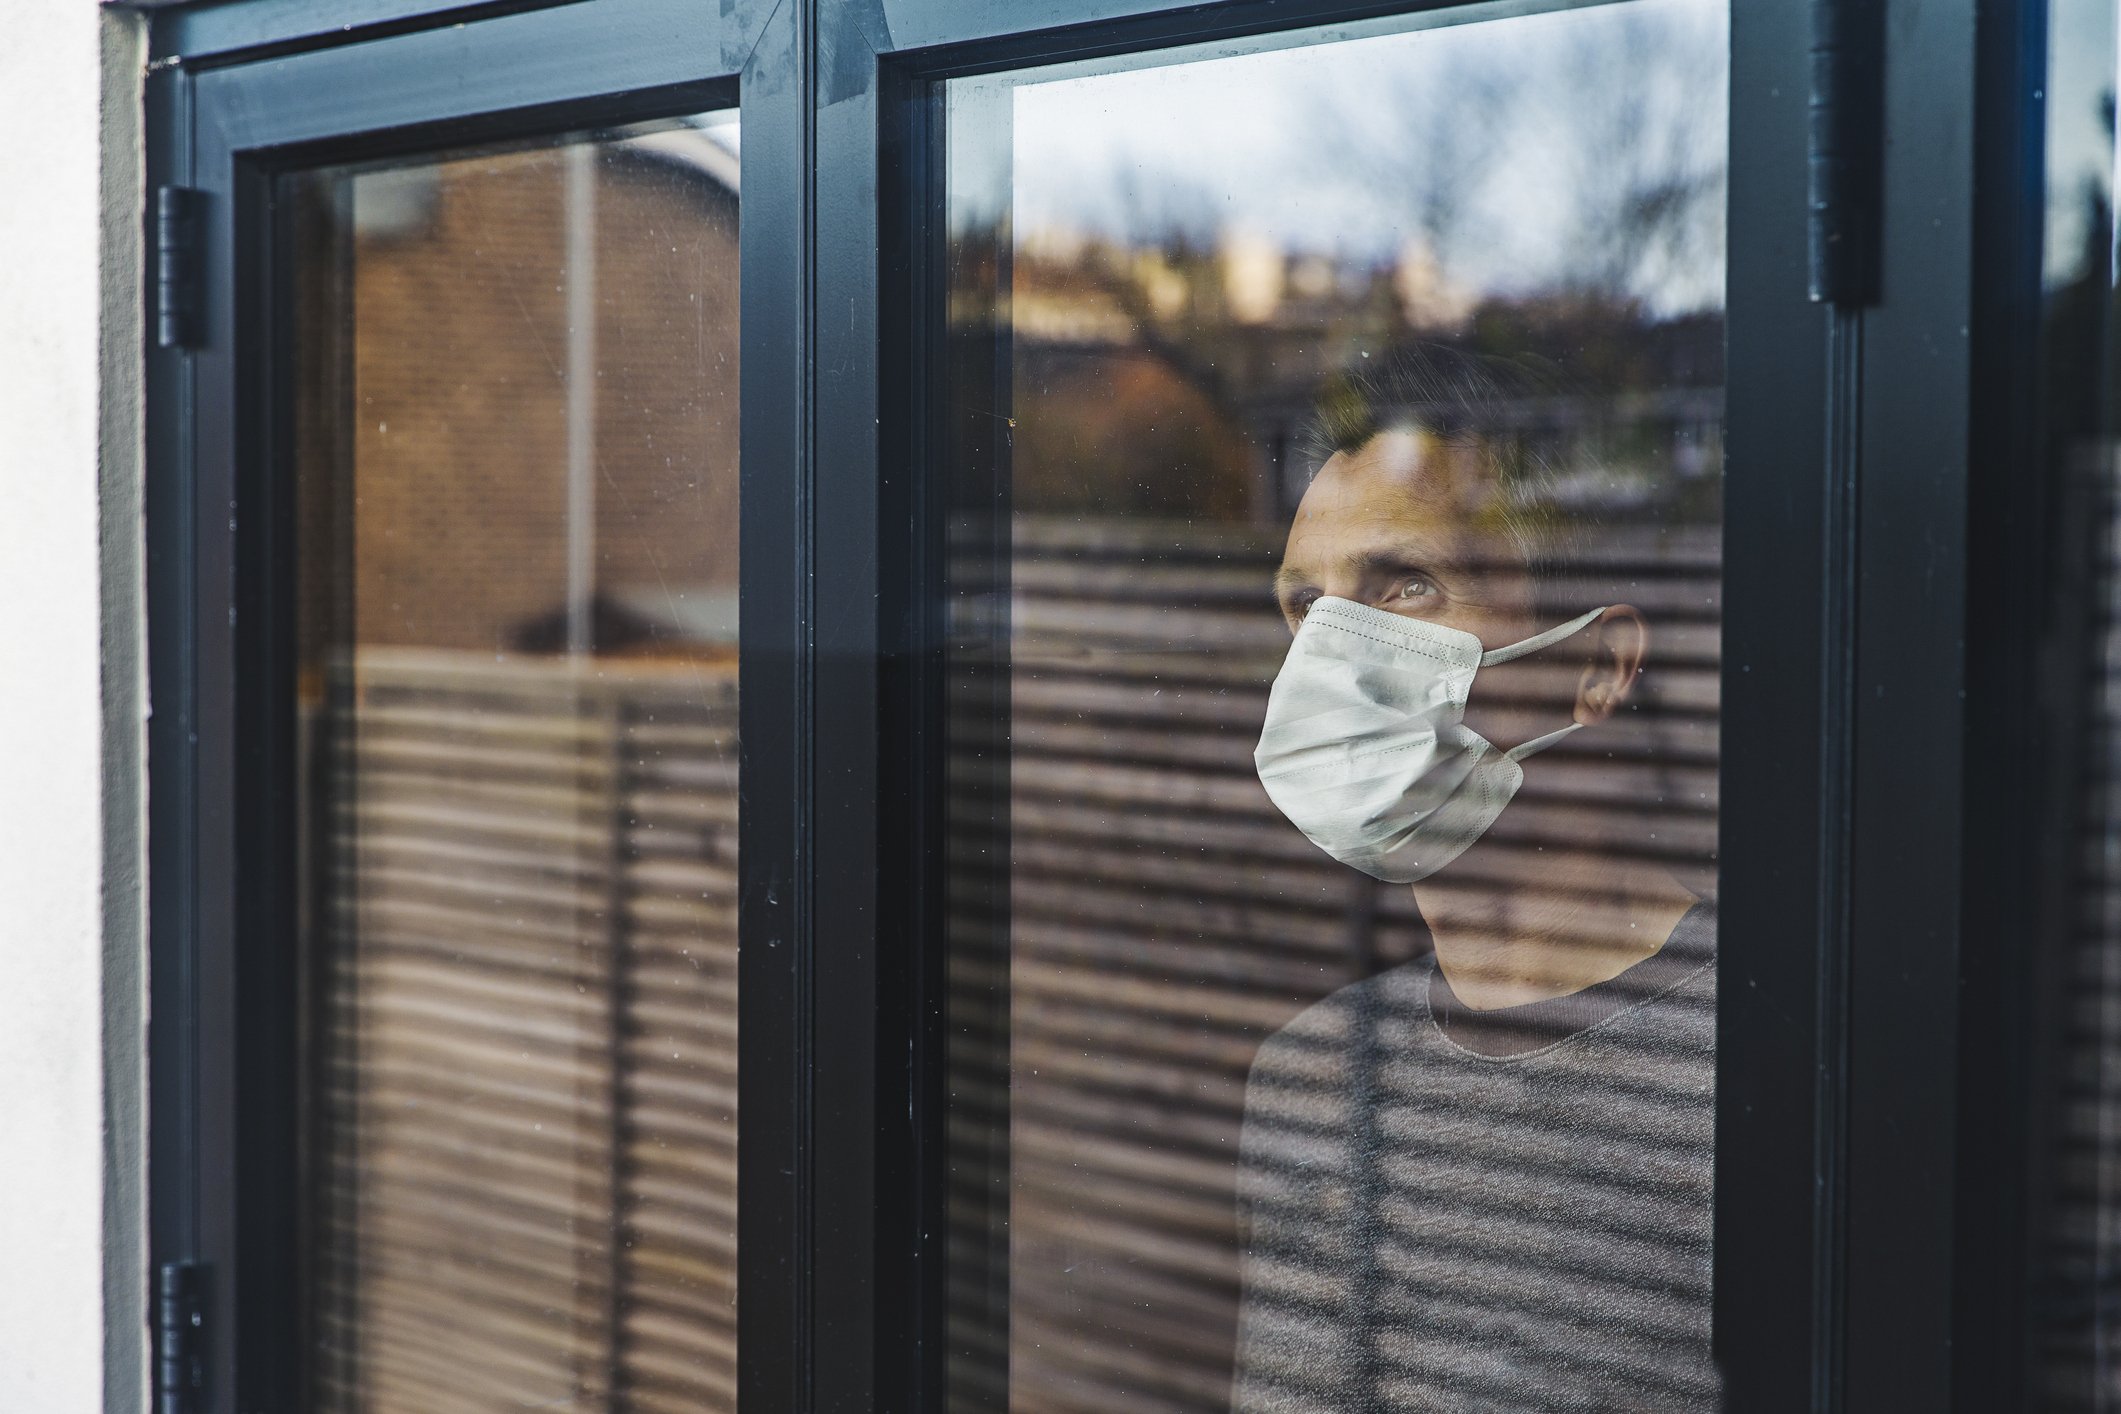 Mann mit Maske schaut aus dem Fenster | Quelle: Getty Images